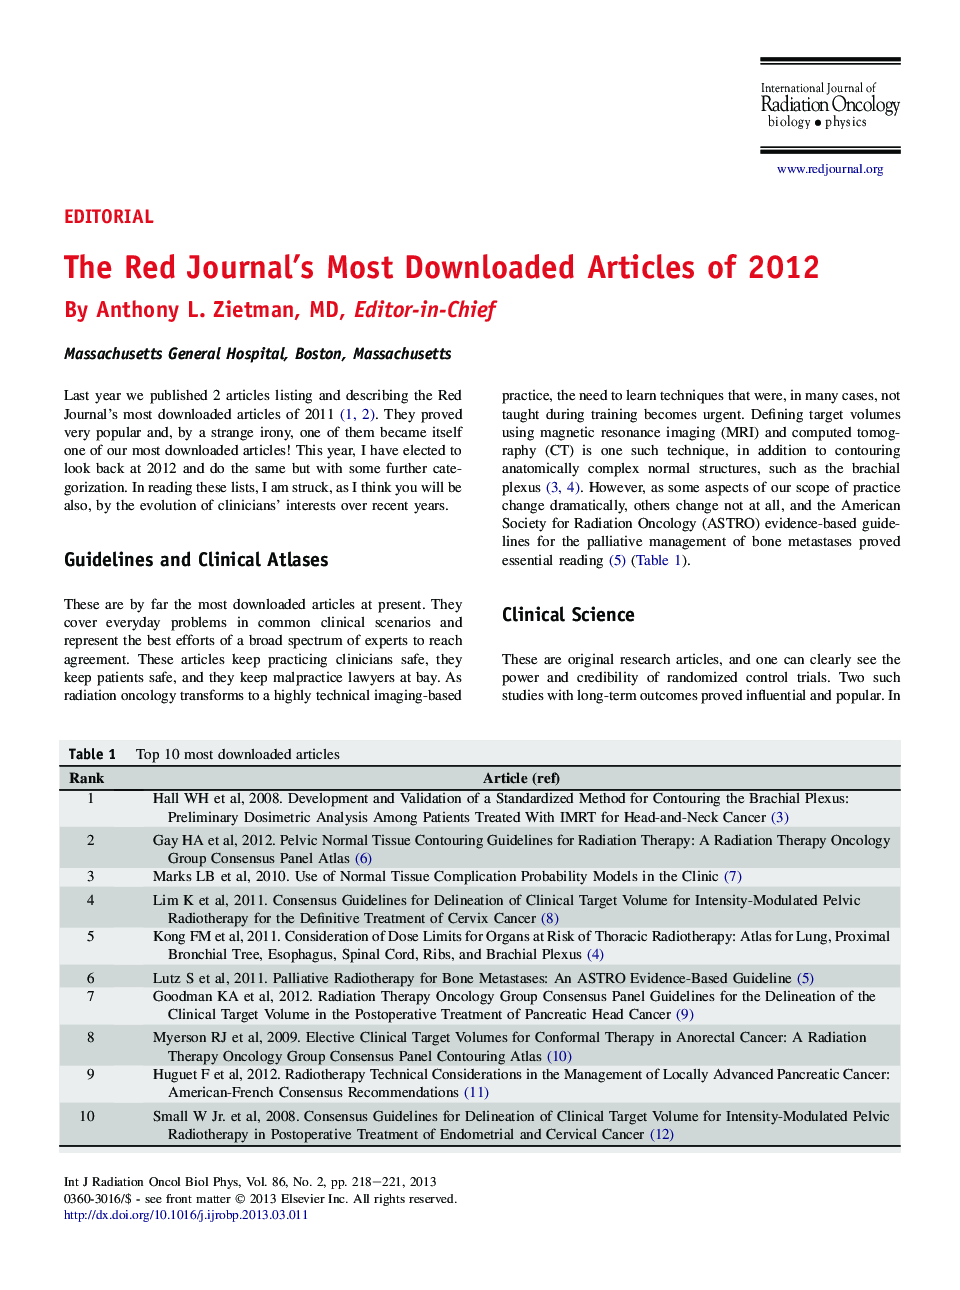 مقالات بیشترین دانلود شده در مجله قرمز 2012 